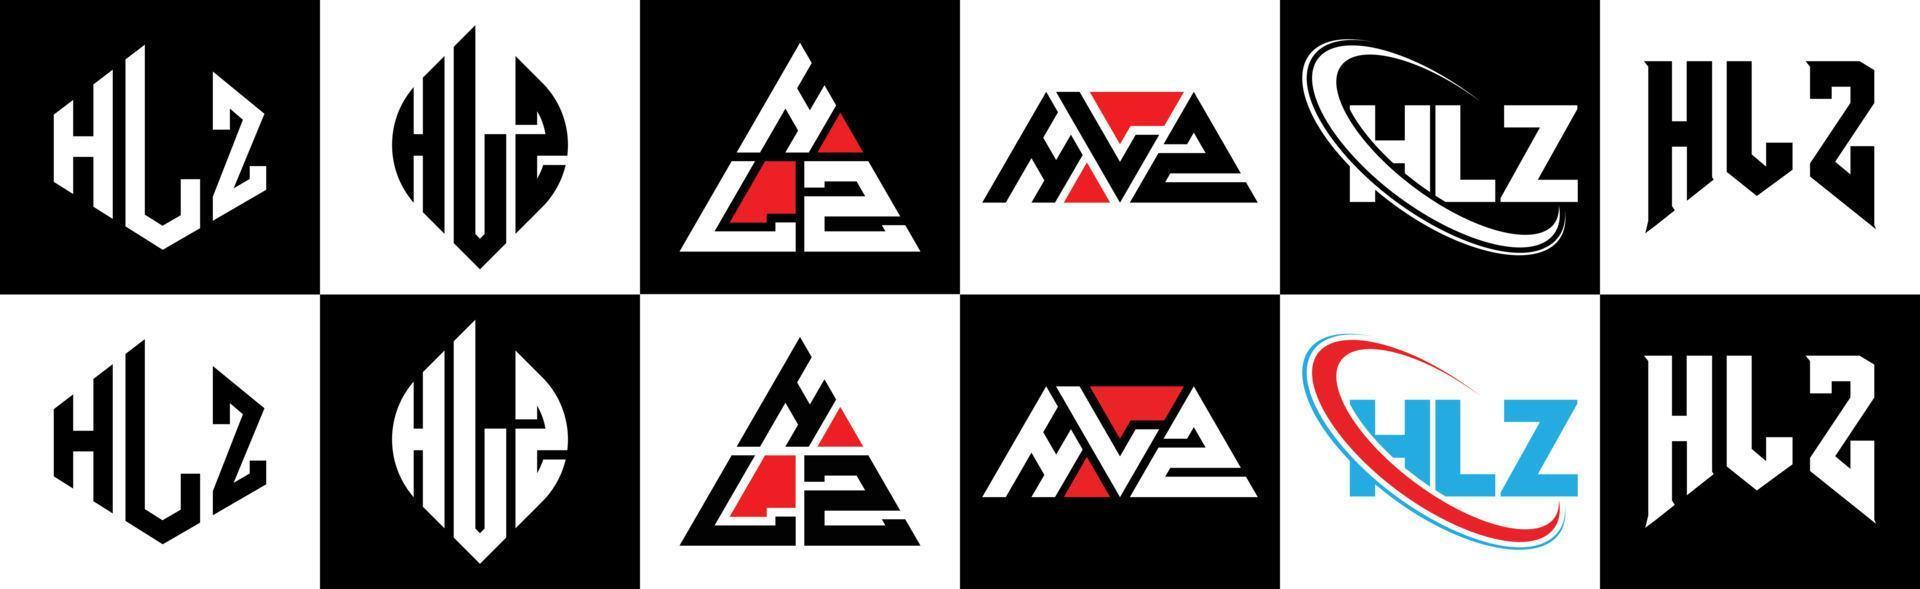 hlz-Buchstaben-Logo-Design in sechs Stilen. hlz-Polygon, Kreis, Dreieck, Sechseck, flacher und einfacher Stil mit schwarz-weißem Buchstabenlogo in einer Zeichenfläche. hlz minimalistisches und klassisches Logo vektor